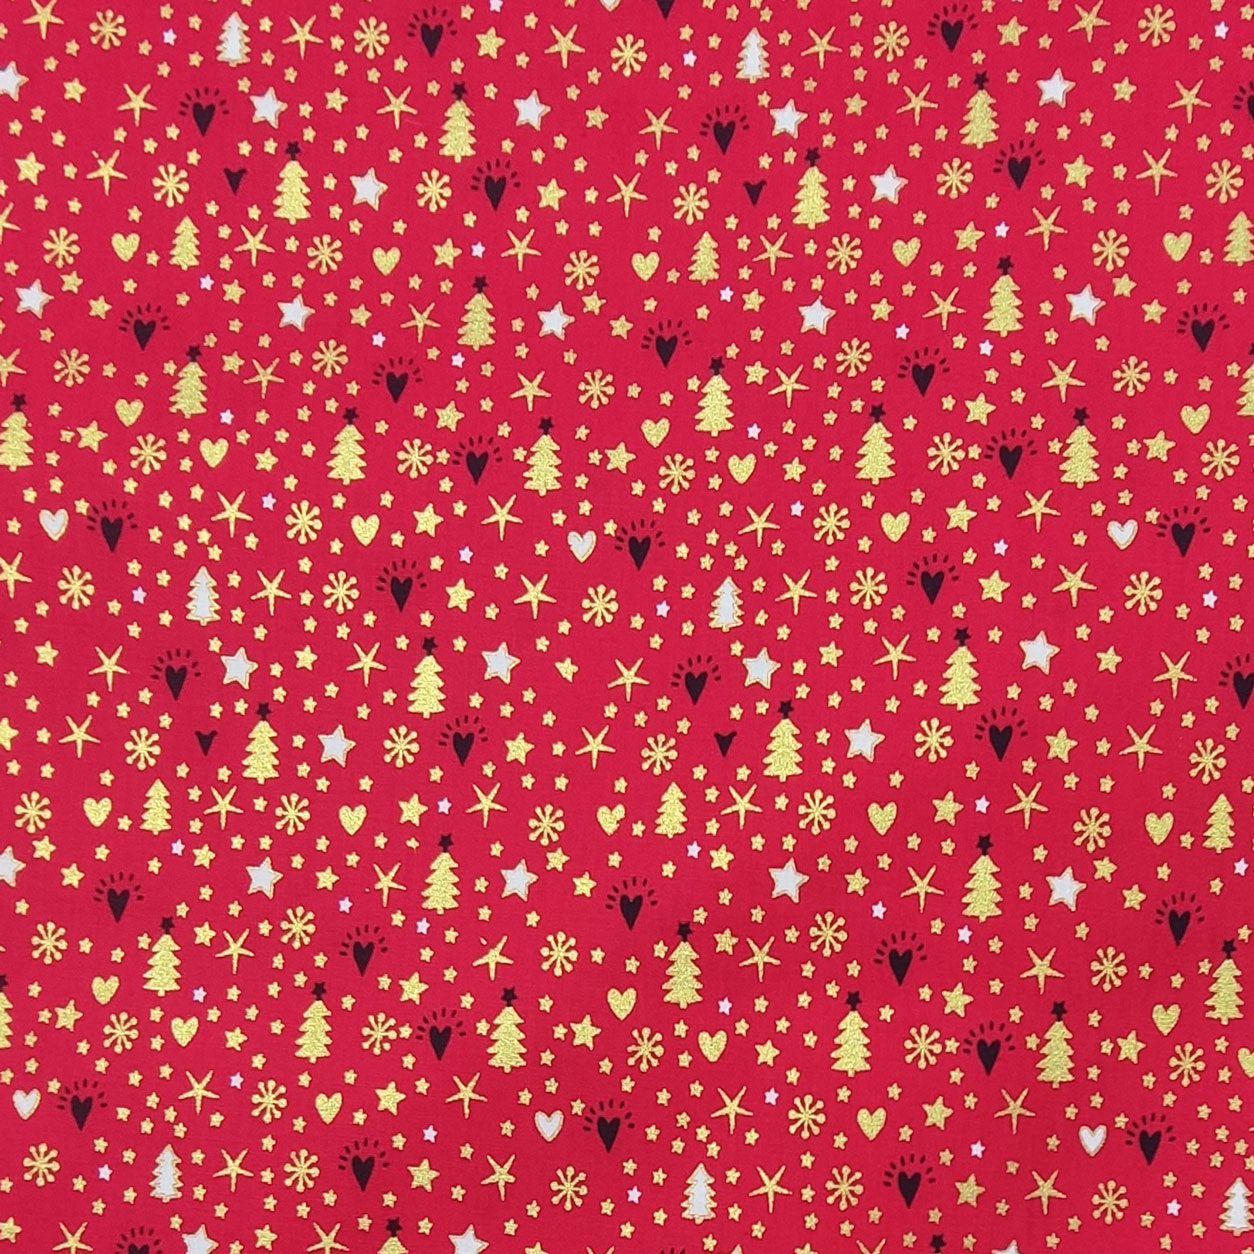 cotone-tessuto-alberi-e-stelline-dorate-sfondo-rosso